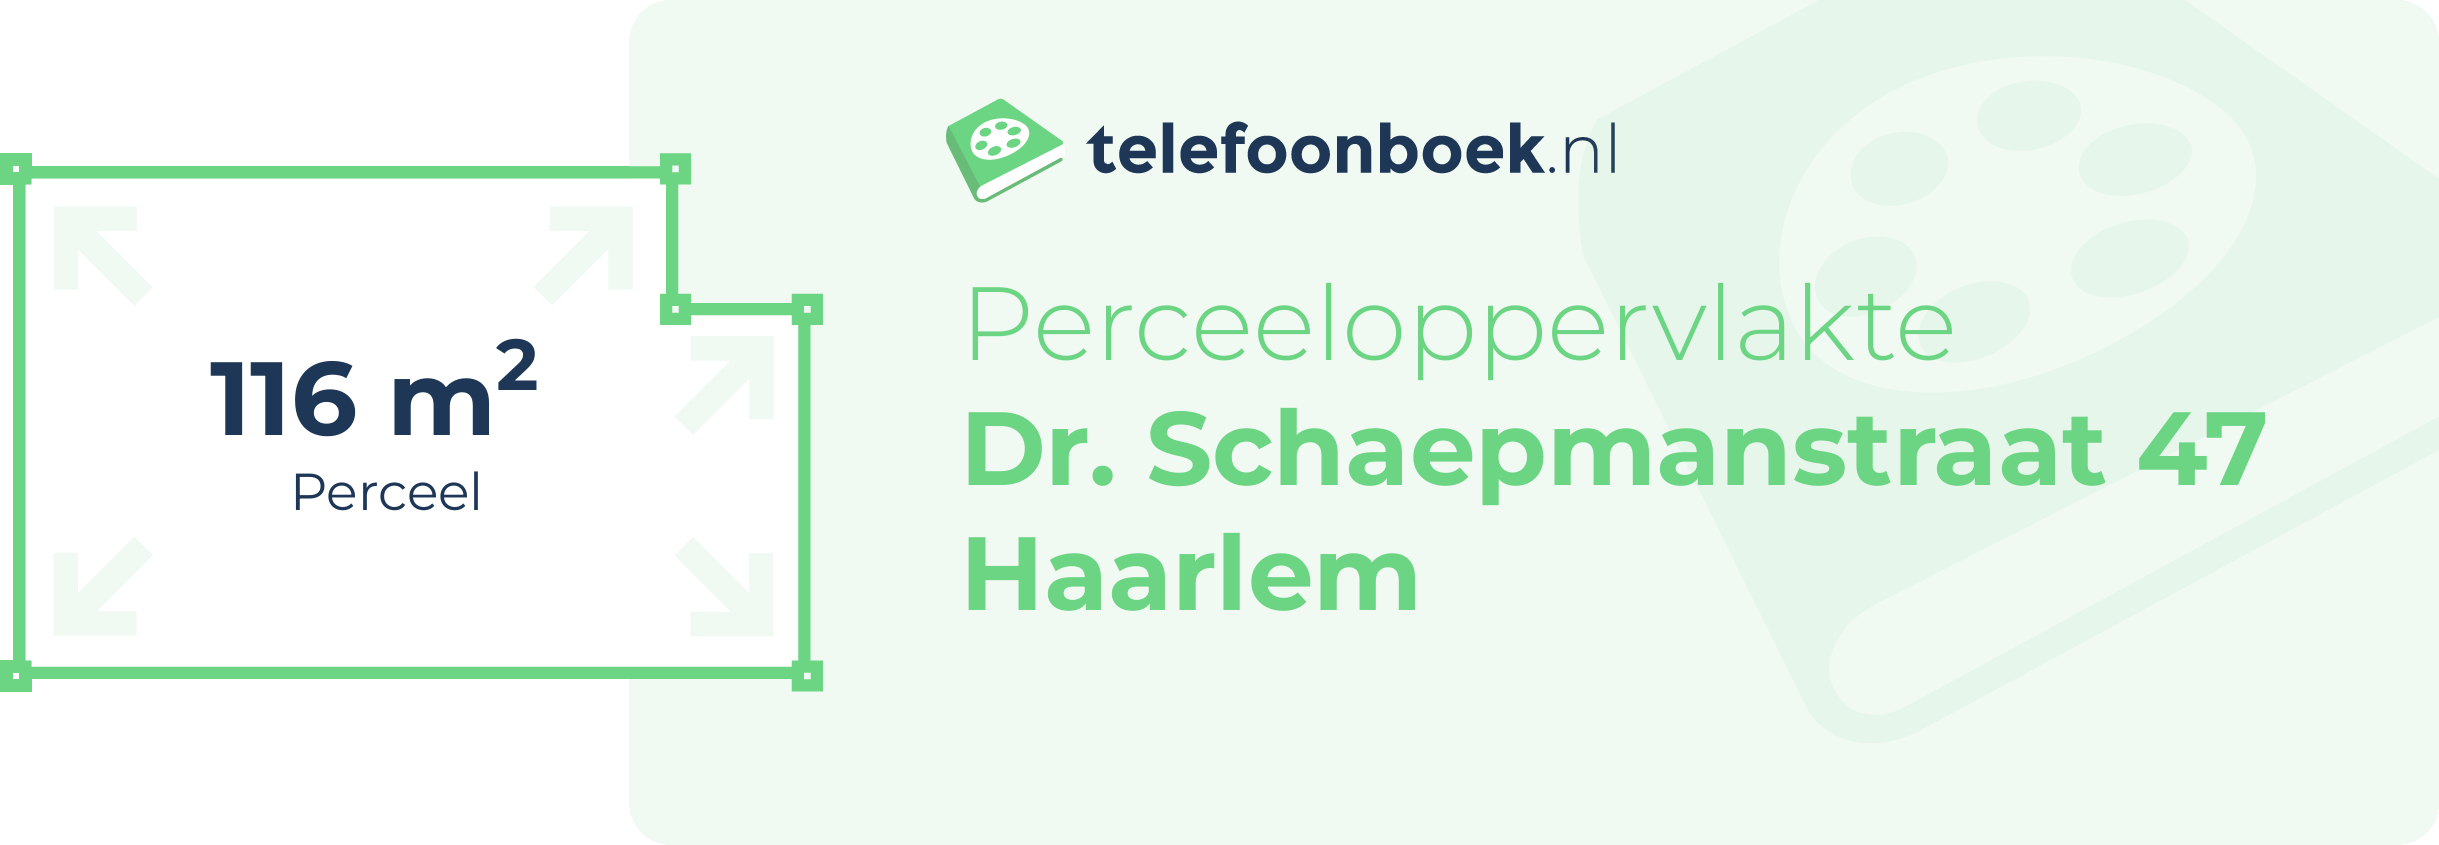 Perceeloppervlakte Dr. Schaepmanstraat 47 Haarlem